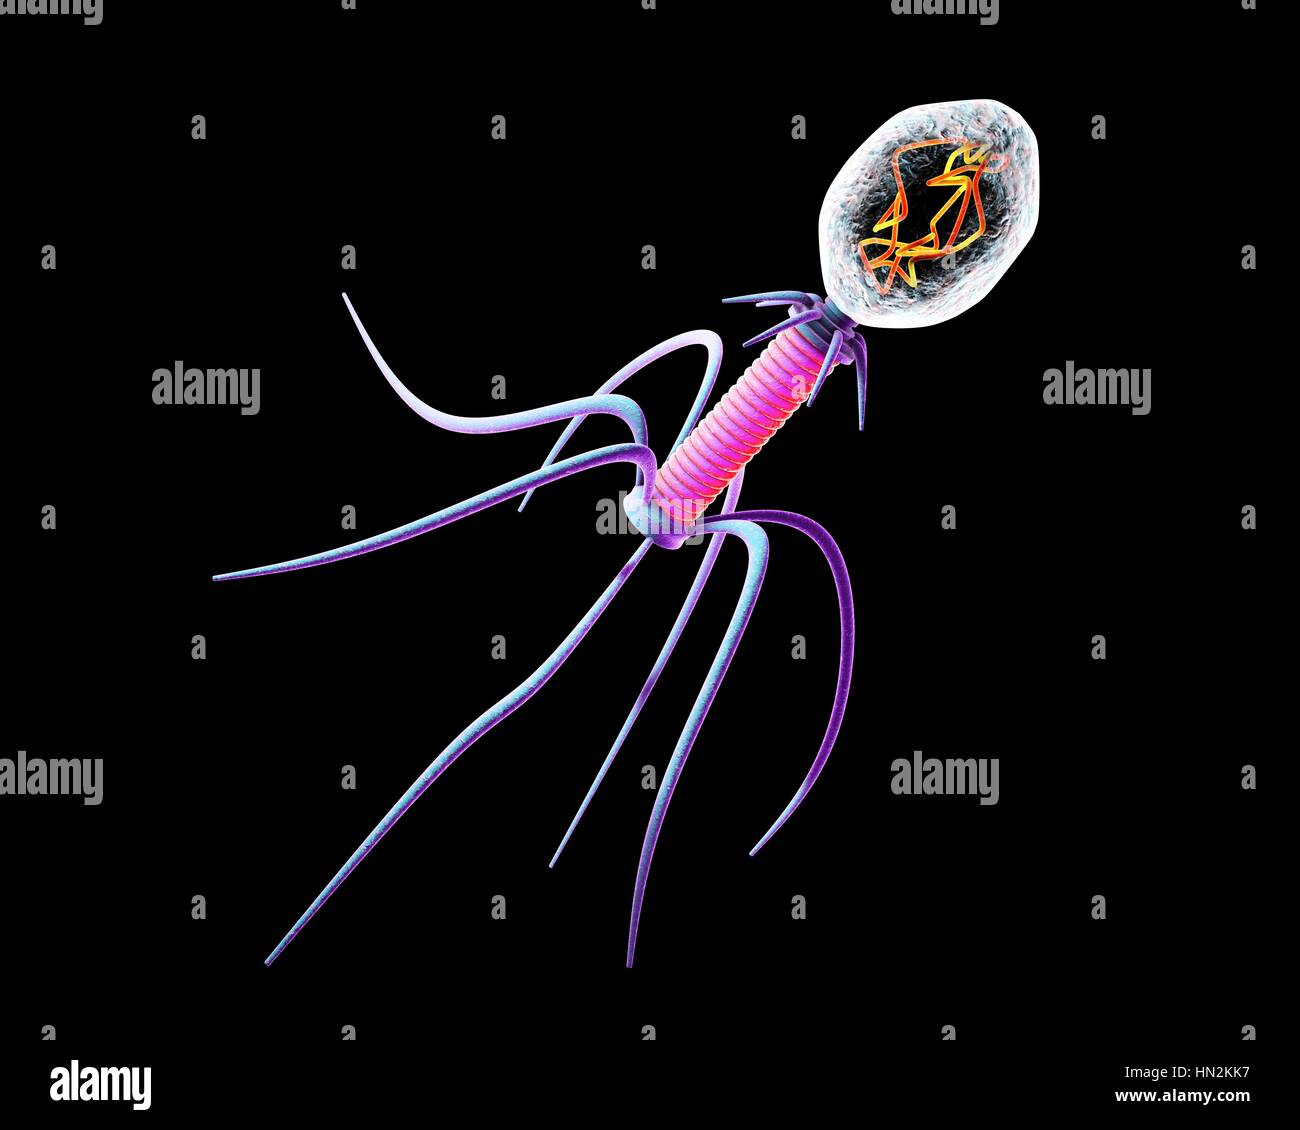 Bakteriophagen, Computer Bild. Ein Bakteriophagen oder Phagen, ist ein Virus, der Bakterien infiziert. Es besteht aus einem Kopf (oben rechts), enthält das genetische Material, einen Schweif (rosa) und Heck Fasern, die ihn an einen spezifischen Rezeptor zu montieren. Das Heck spritzt seine genetischen Materials in das Bakterium durch die Zellmembran, und dies entführt die des Bakteriums zellulären Maschinerie, zwingen, mehr Kopien von den Bakteriophagen produzieren. Wenn eine ausreichende Anzahl hergestellt wurden, verlassen die Phagen die Zelle durch Lyse, ihn dabei zu töten. Stockfoto